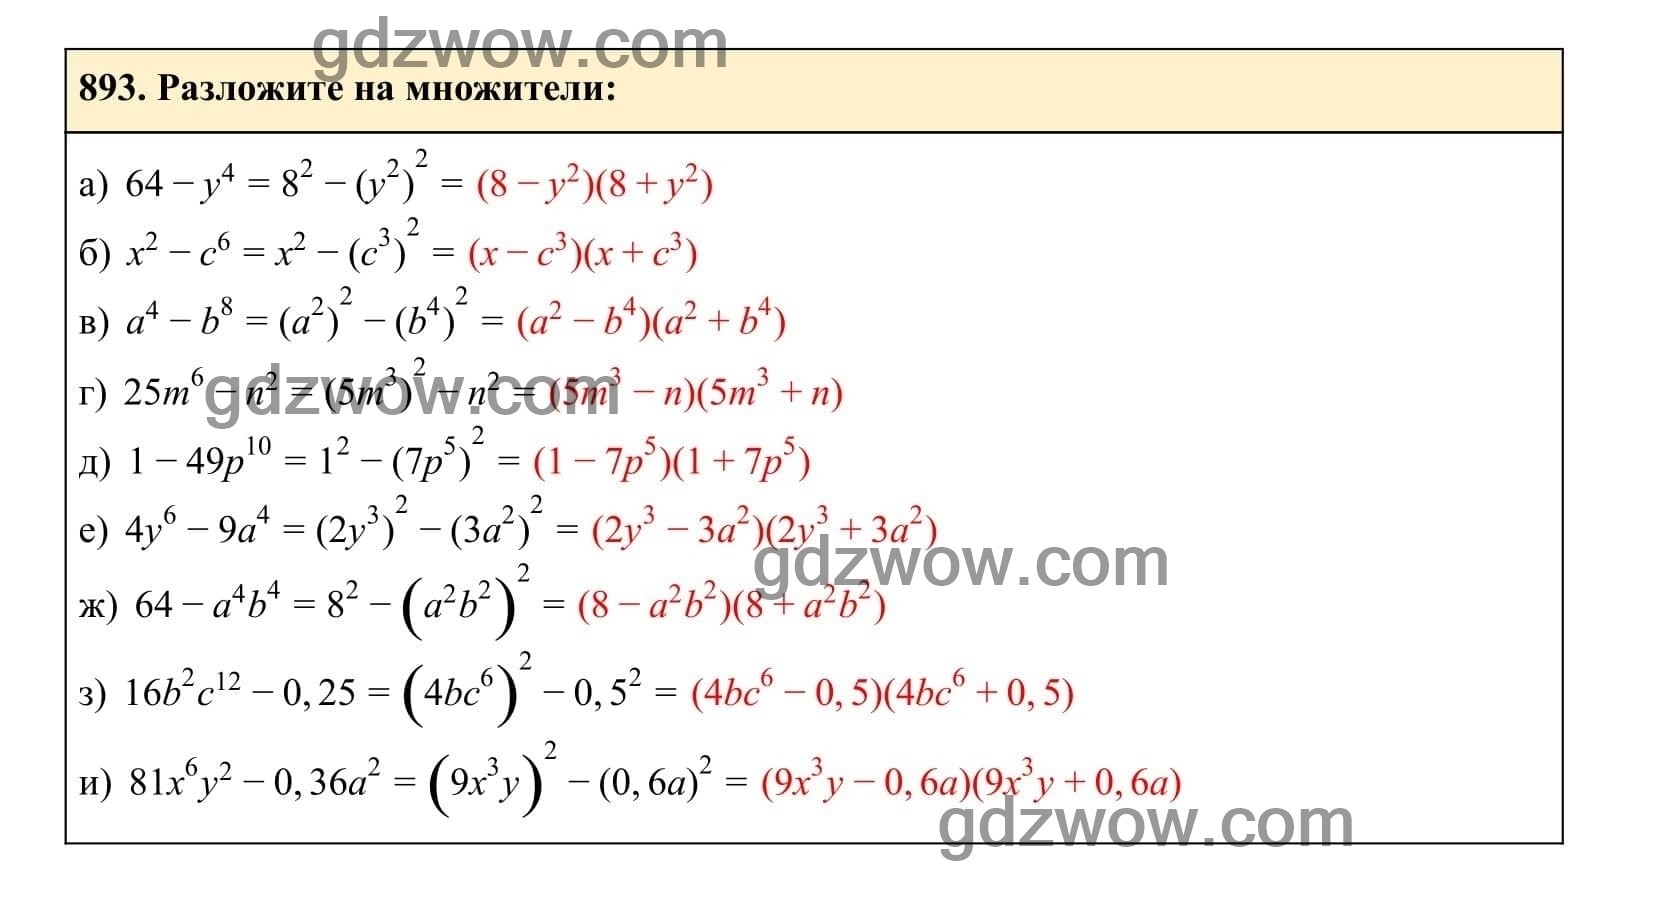 Упражнение 893 - ГДЗ по Алгебре 7 класс Учебник Макарычев (решебник) - GDZwow